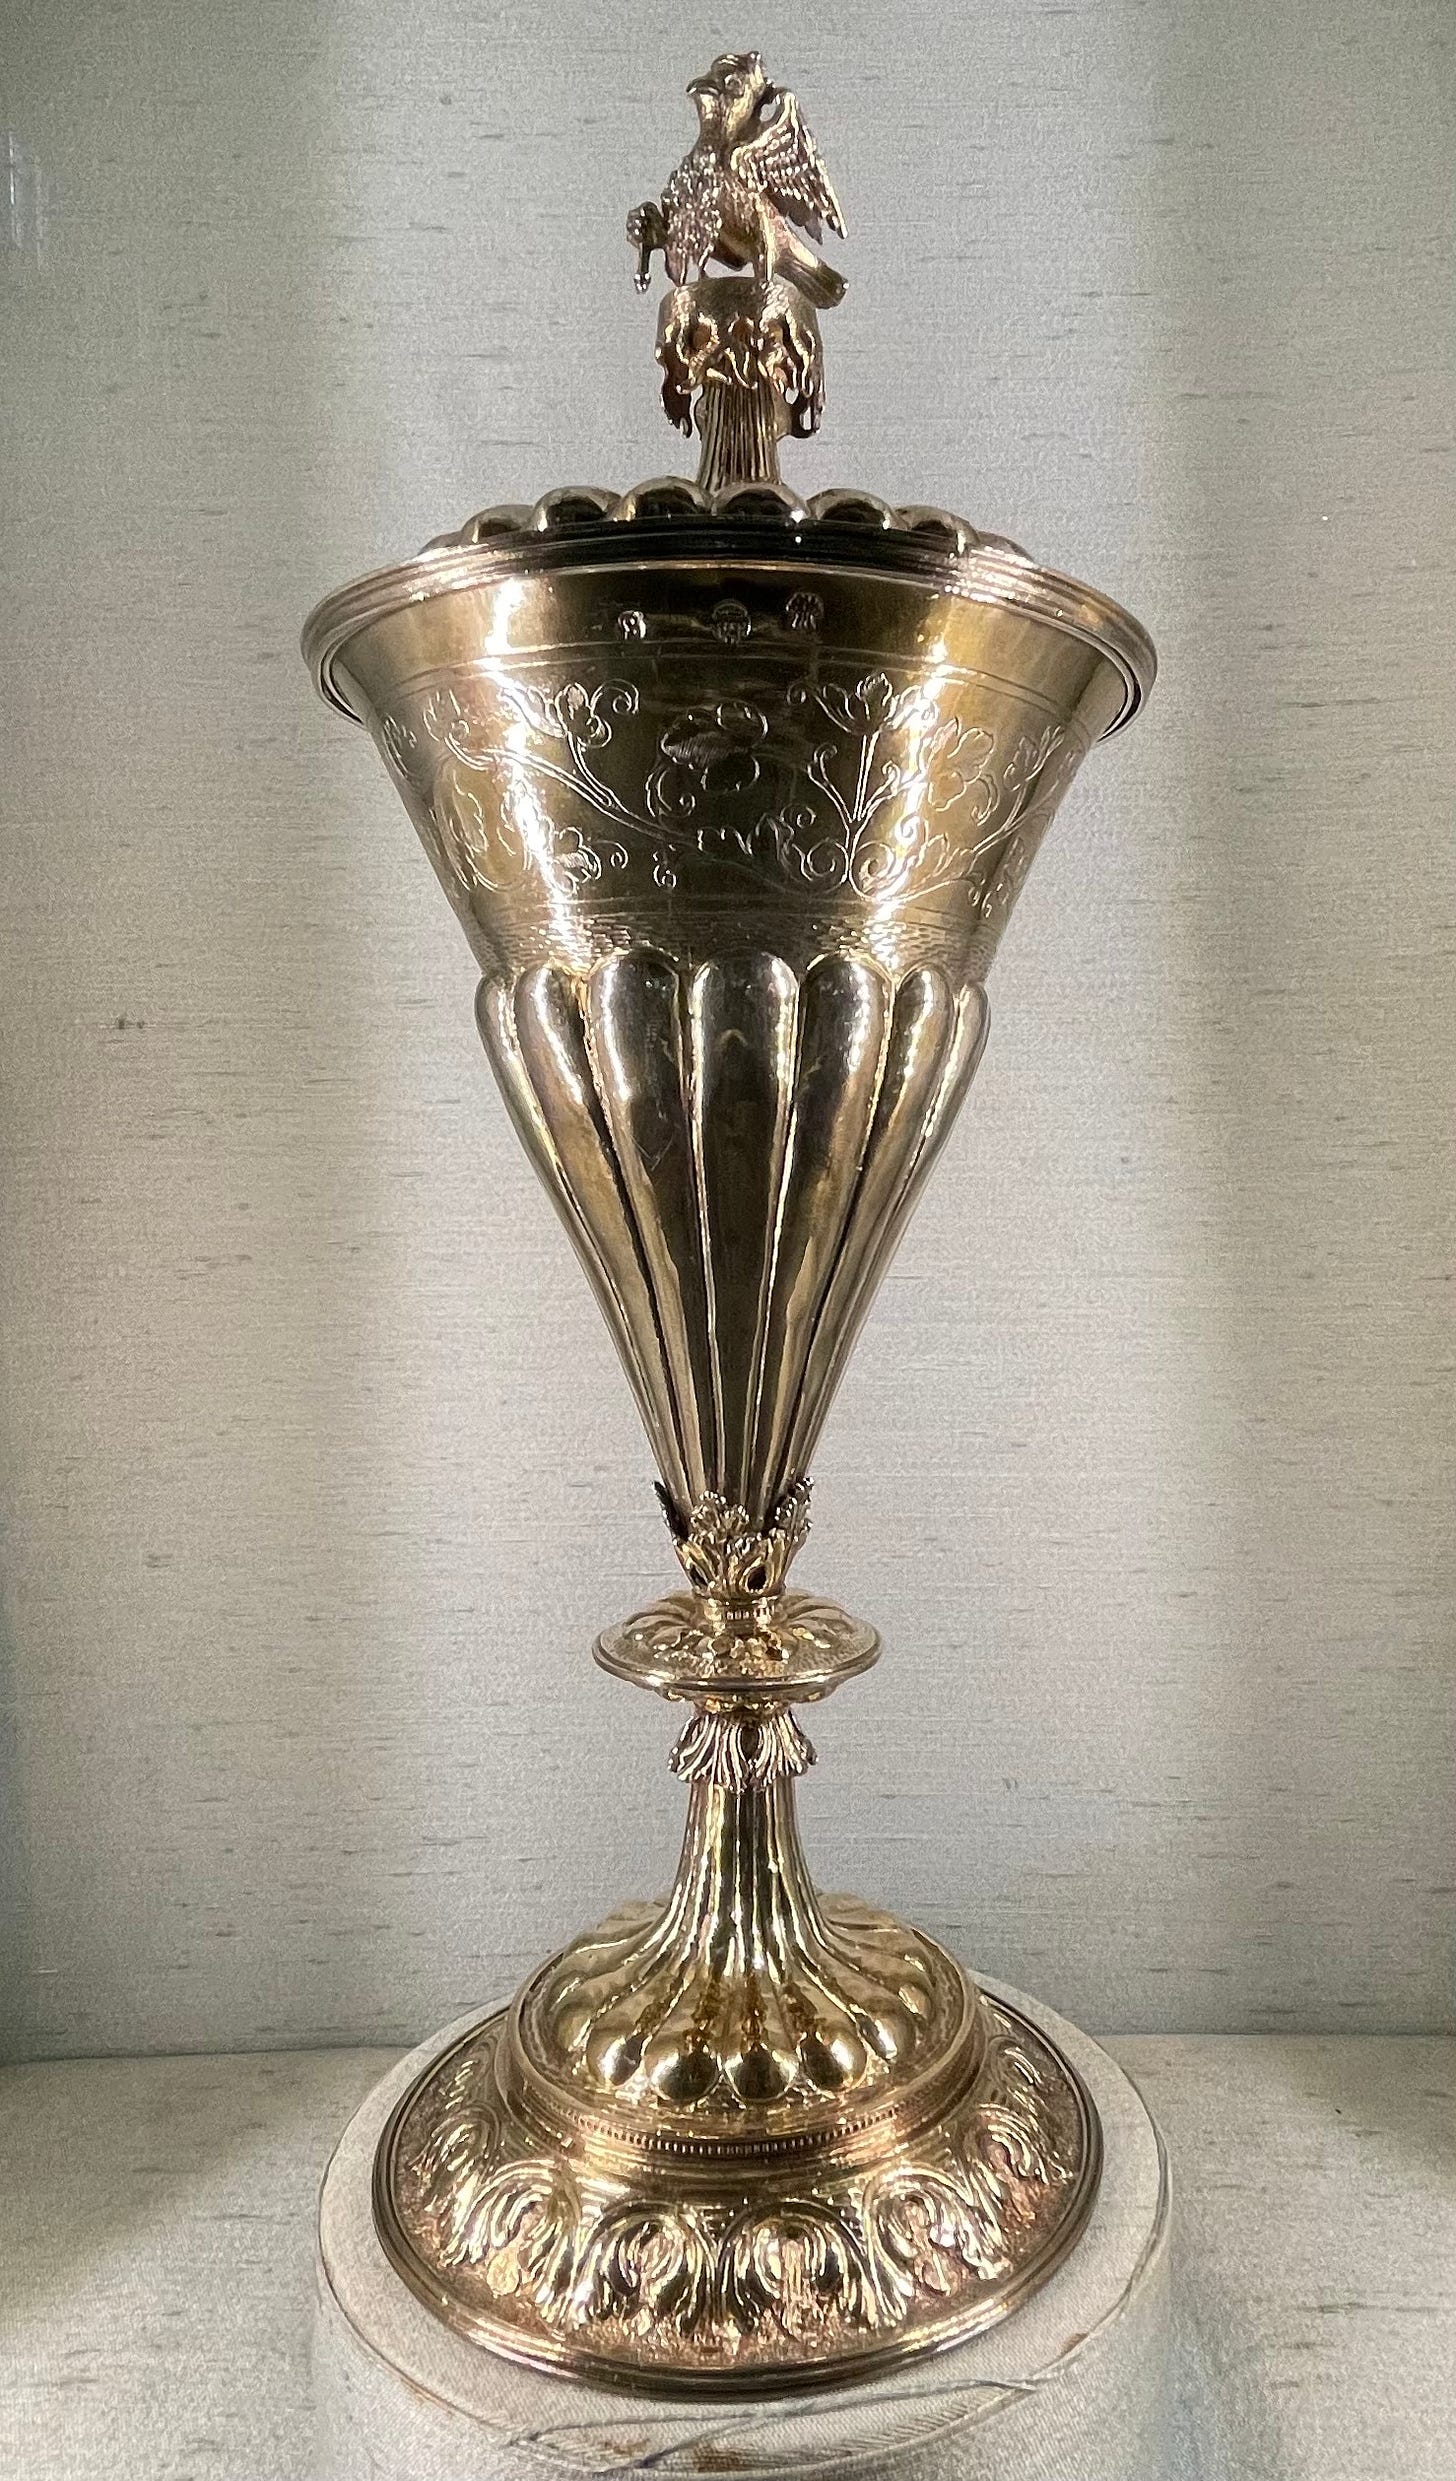 The Anne Boleyn Cup